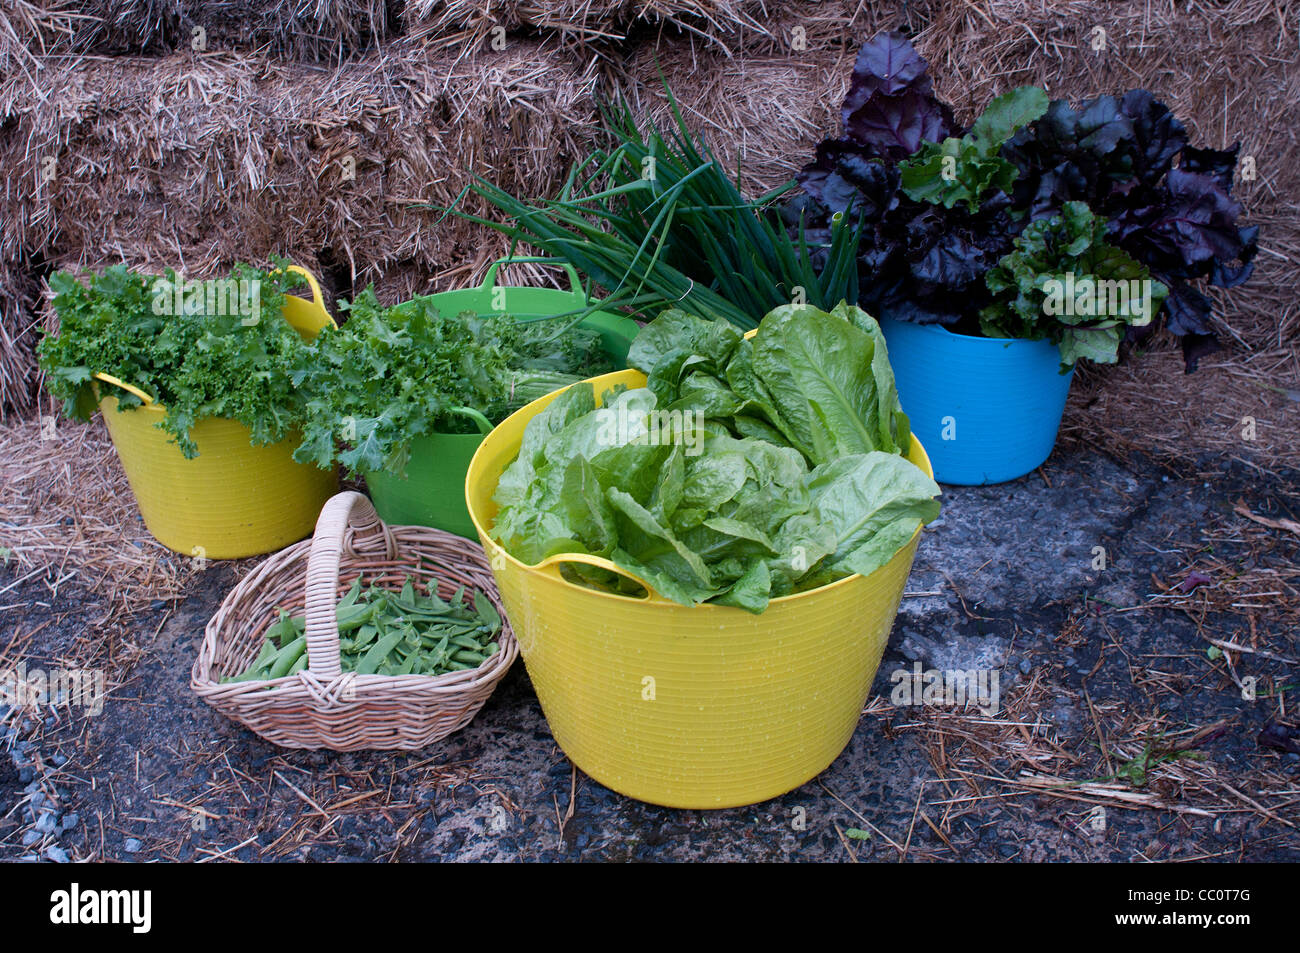 Salade de légumes verts récoltés et pois mange-tout dans du plastique trugs et panier Banque D'Images